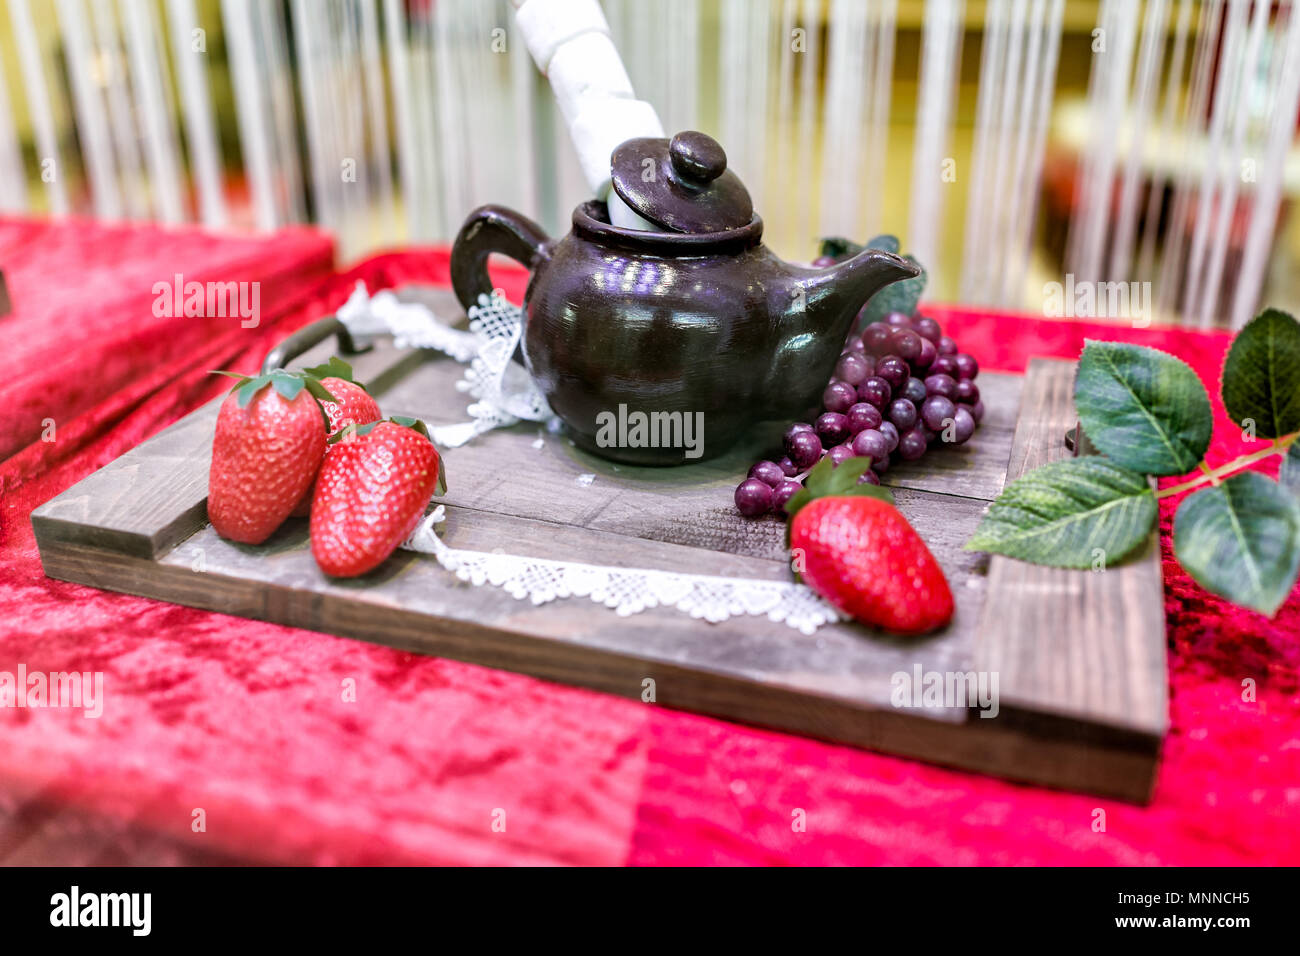 Visualizzazione di cioccolato commestibile teiera con marshmallows, fragole, sul tagliere di legno decorazione con foglie verdi e uve frutto, velluto rosso Foto Stock